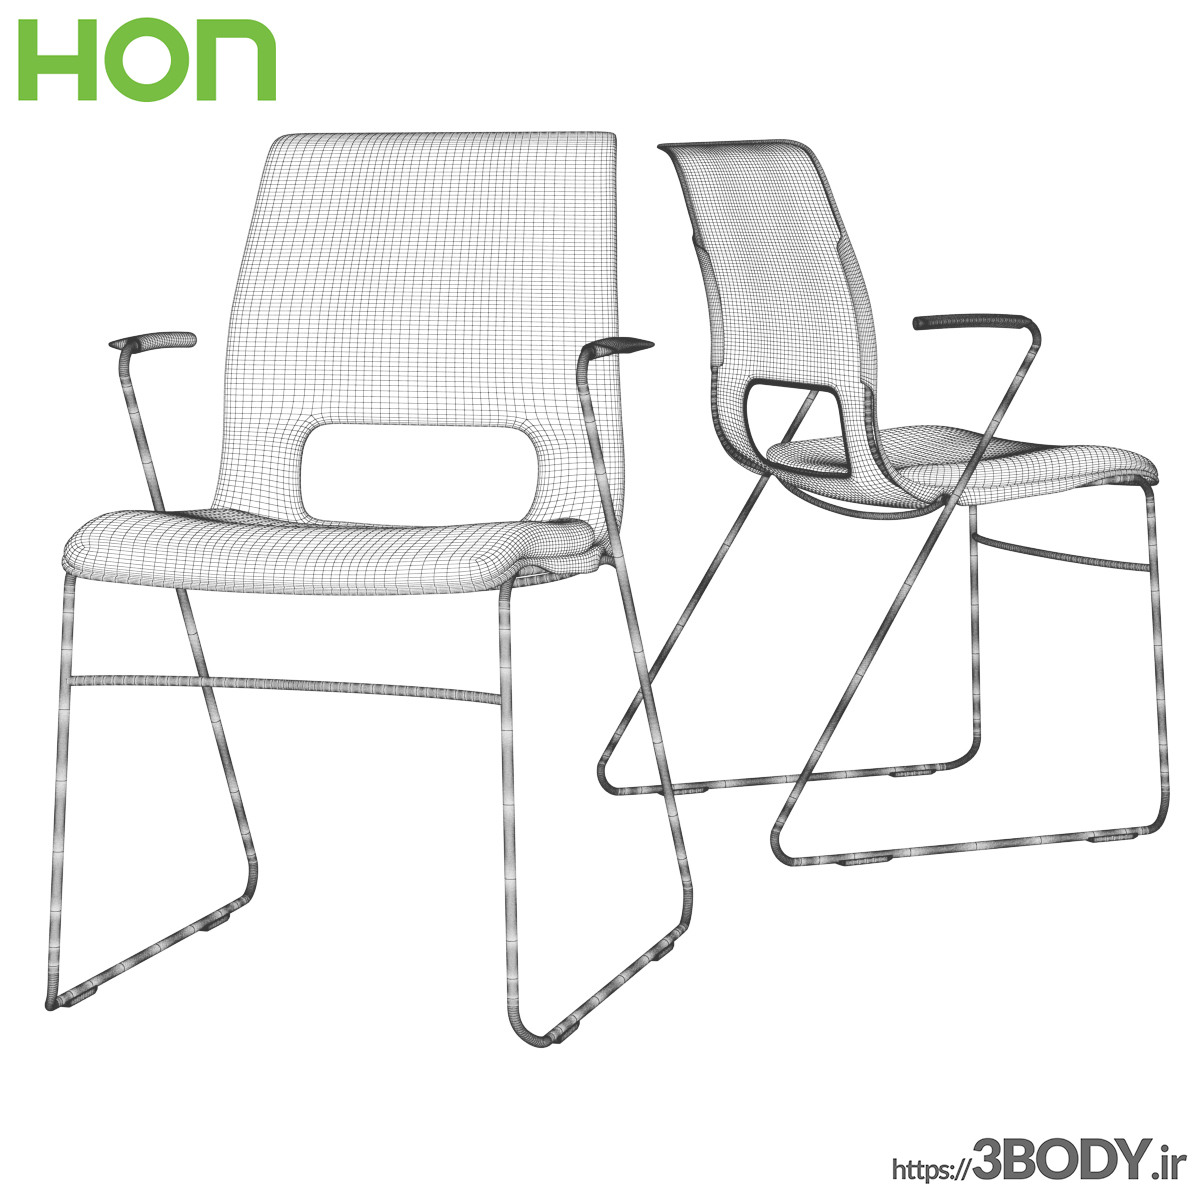 مدل سه بعدی صندلی راحتی عکس 2